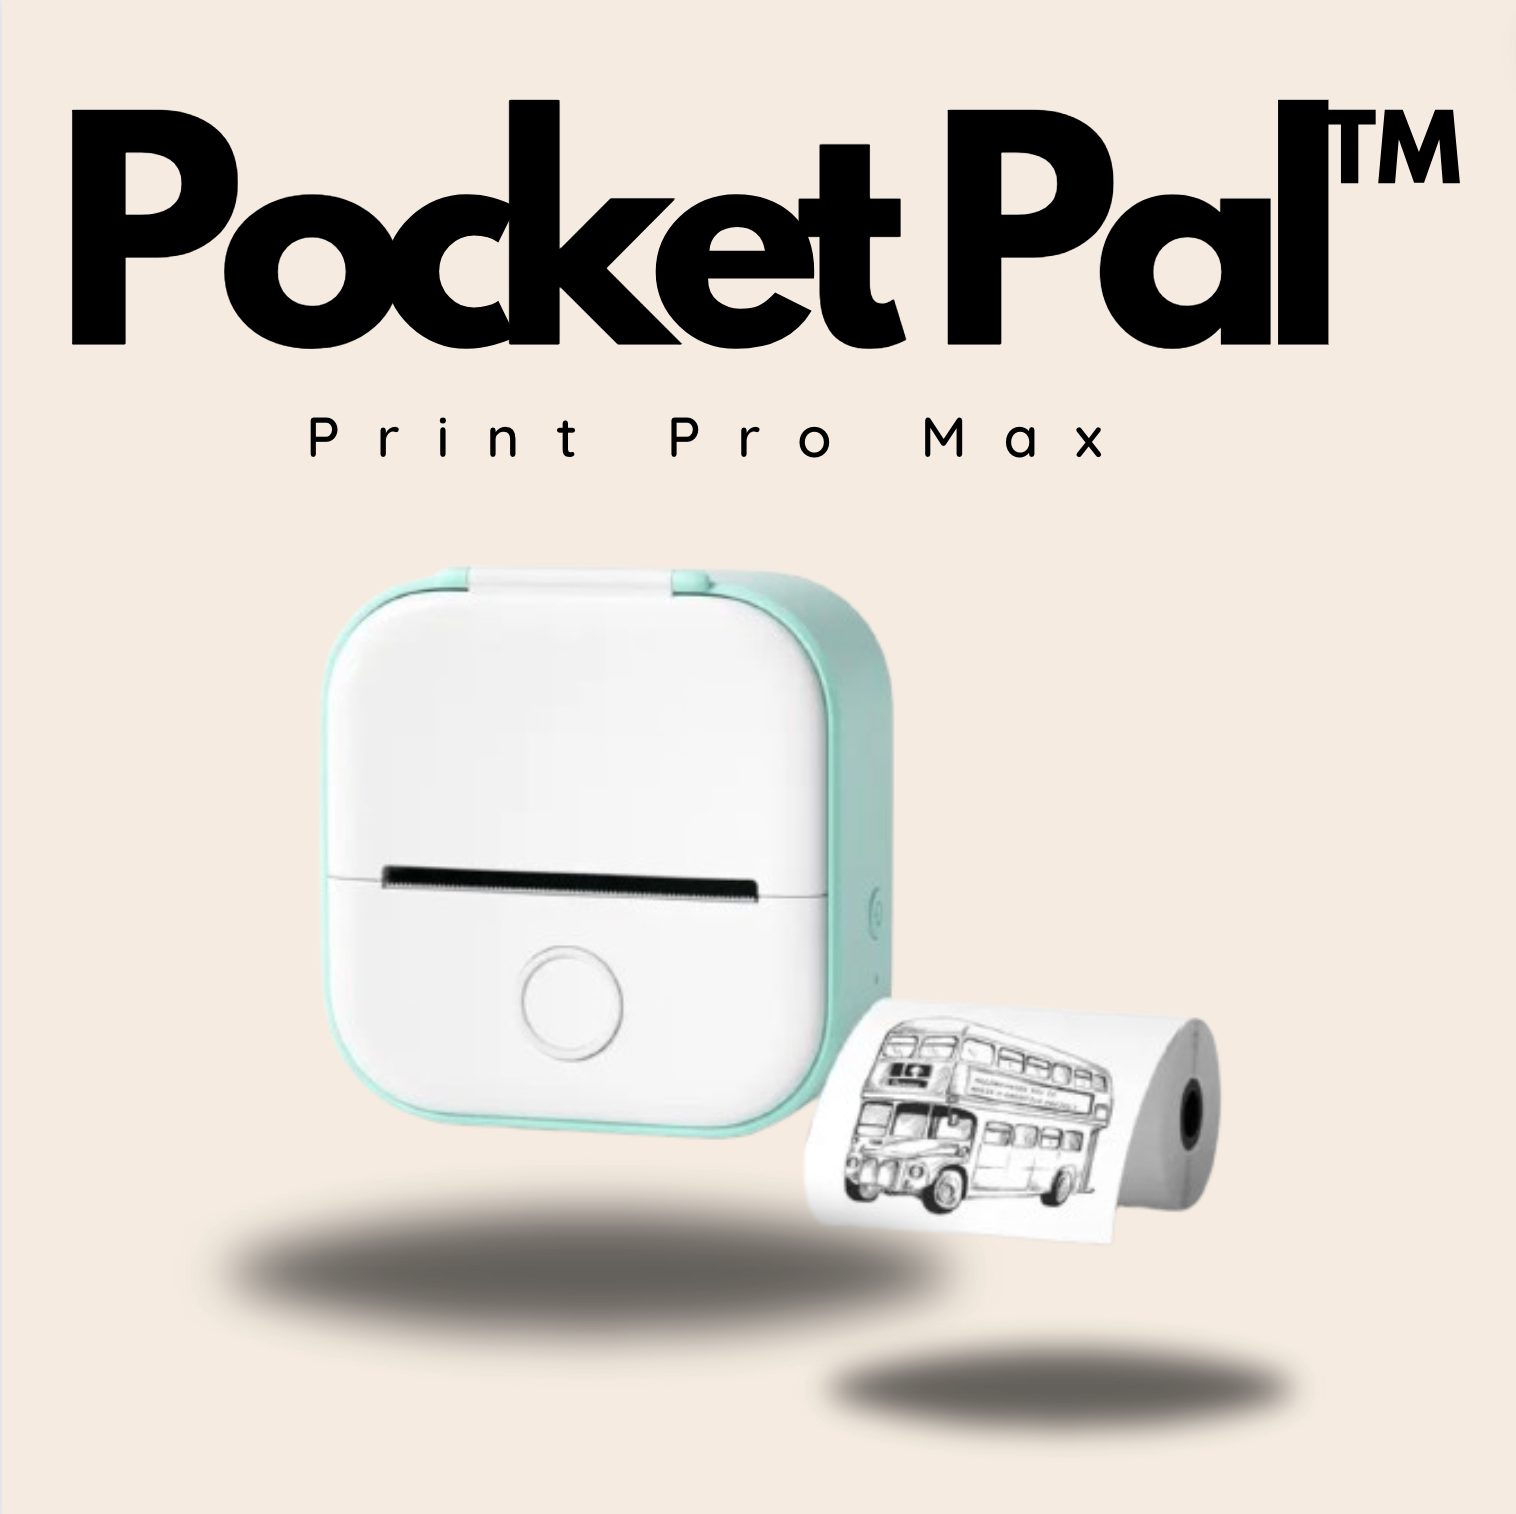 The Pocket Pal™ Print Pro Max